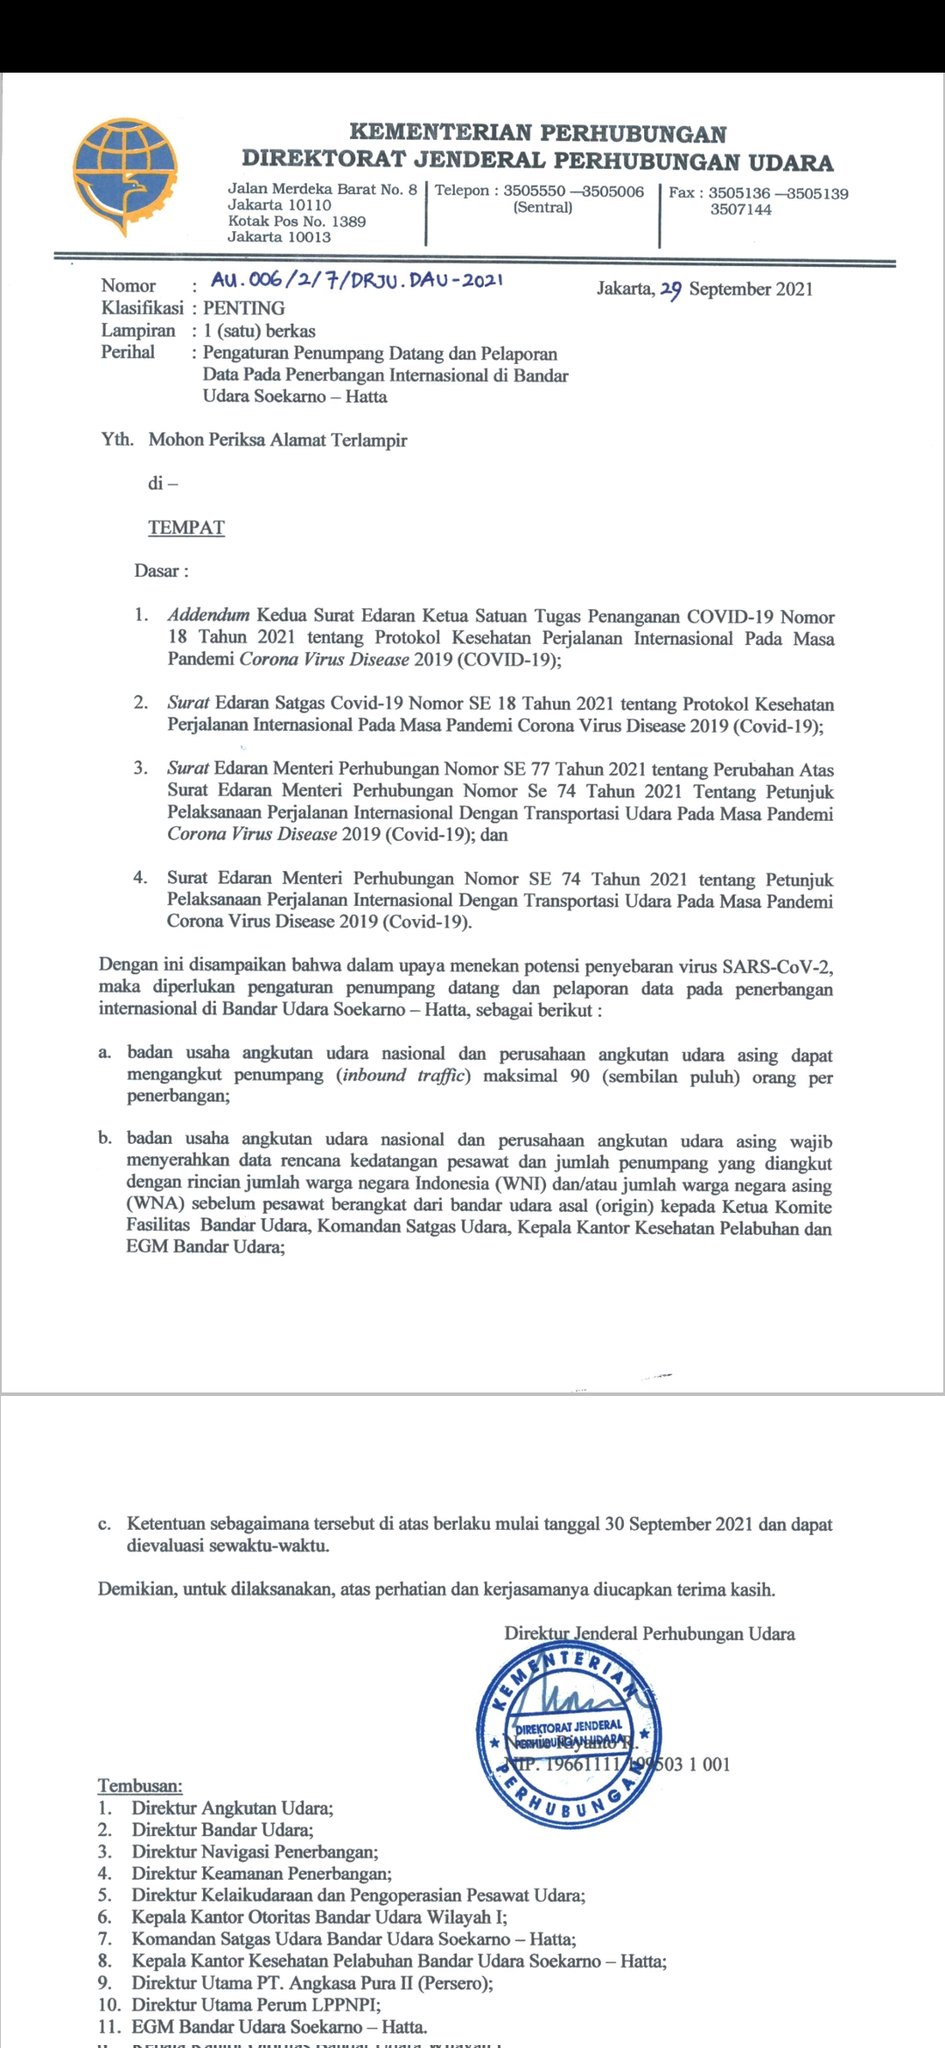 Indonesia limita los vuelos internacionales entrantes - Coronavirus Indonesia: condiciones de entrada, cancelación - Forum Southeast Asia